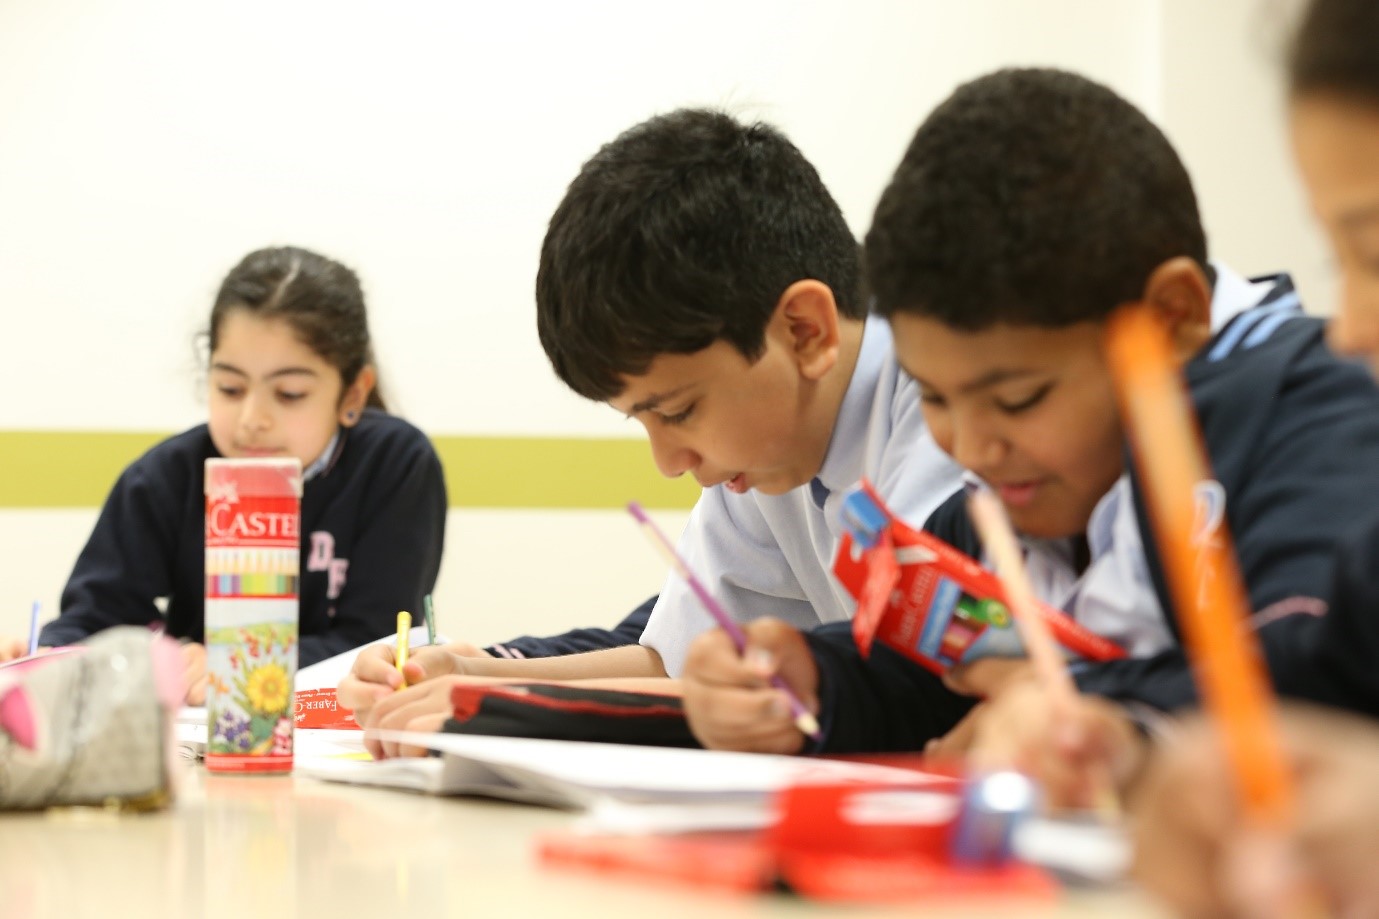 أرخص 3 مناطق بالرسوم المدرسية في دبي